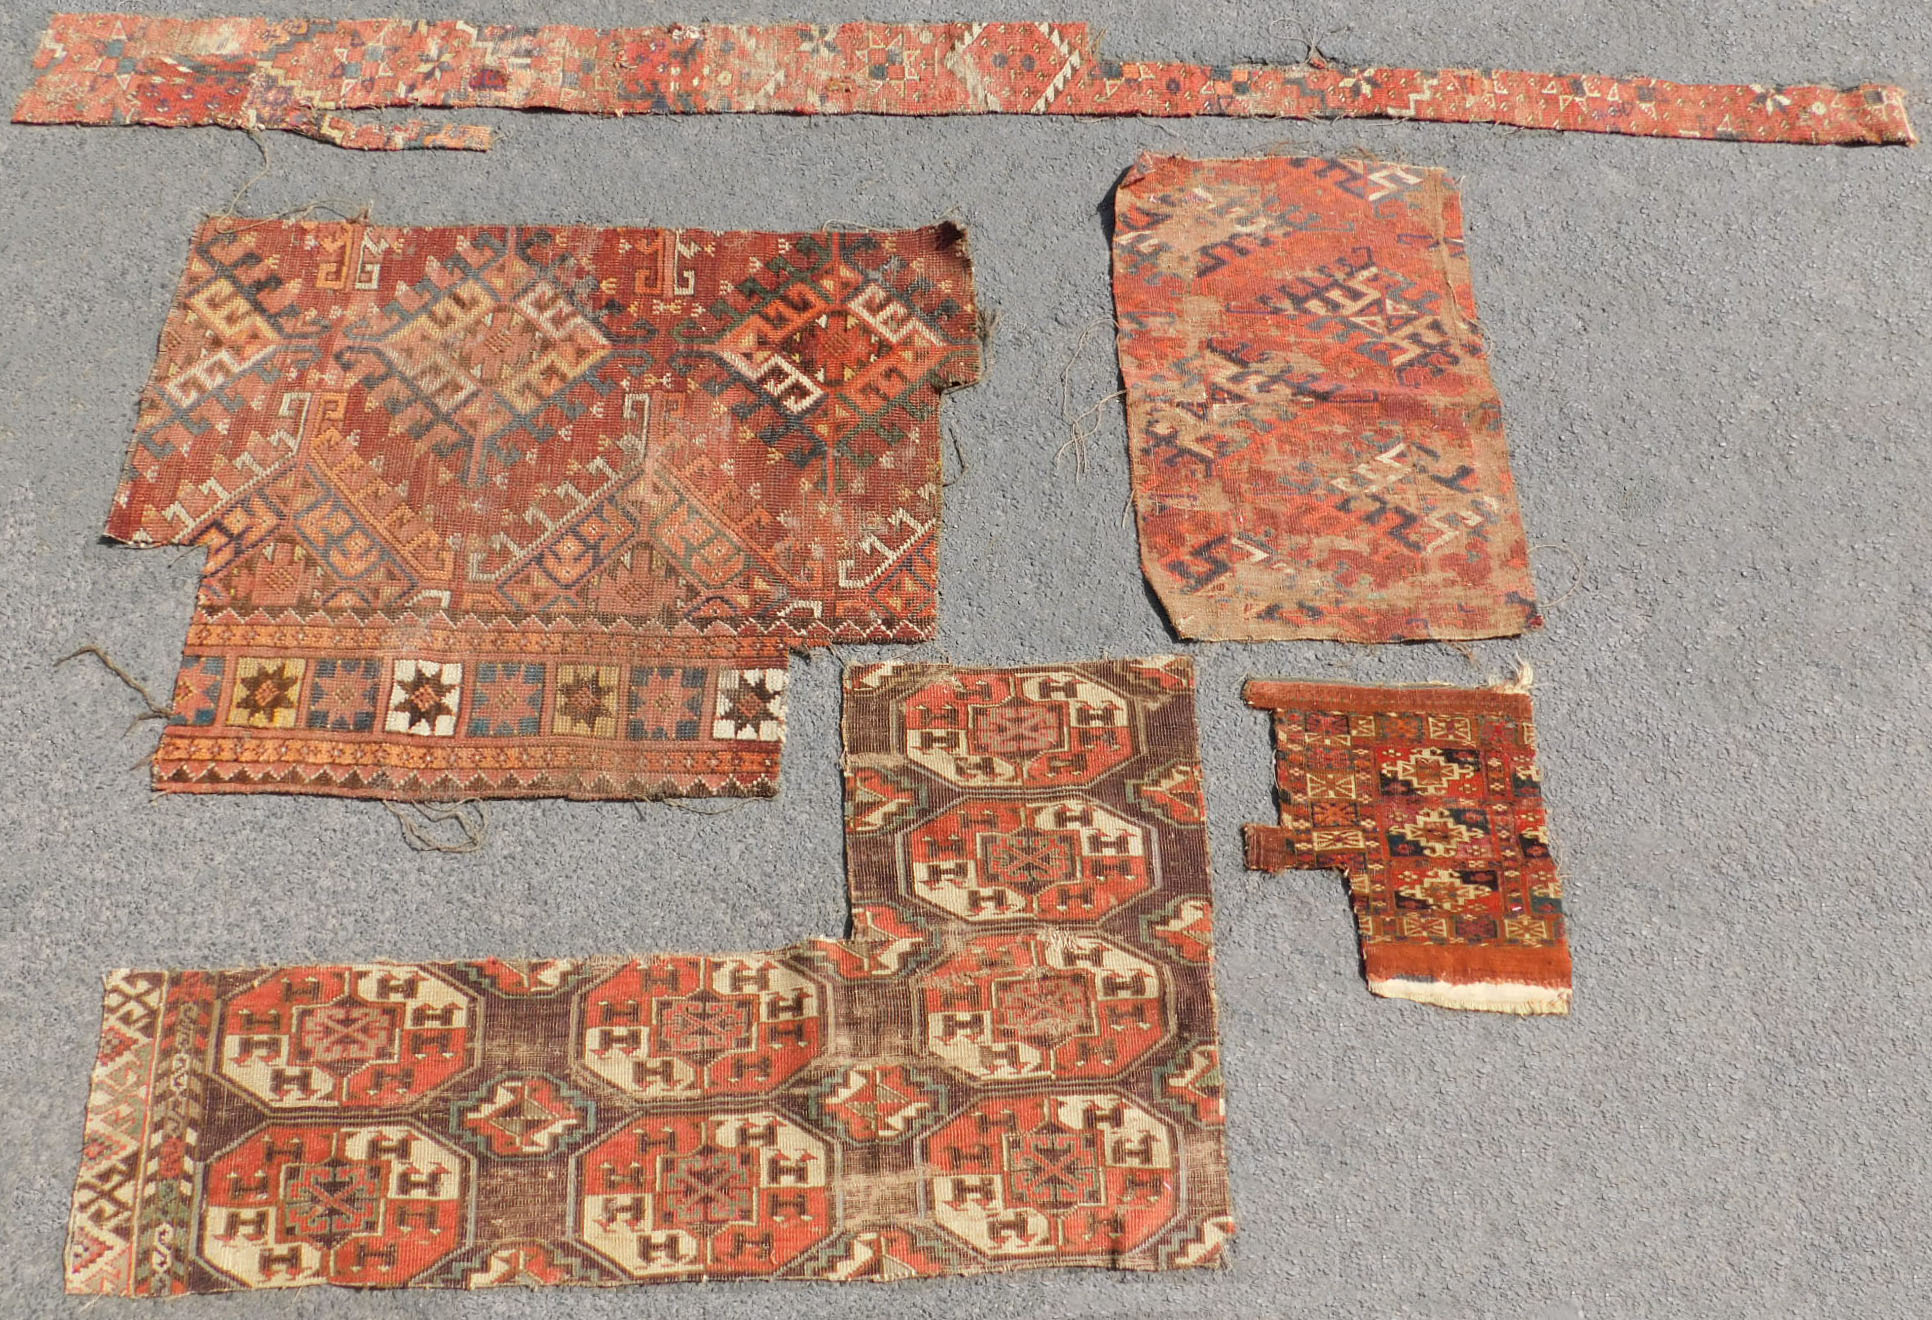 Studiensammlung. 5 Turkmenen Stammesteppich Fragmente. Antik.